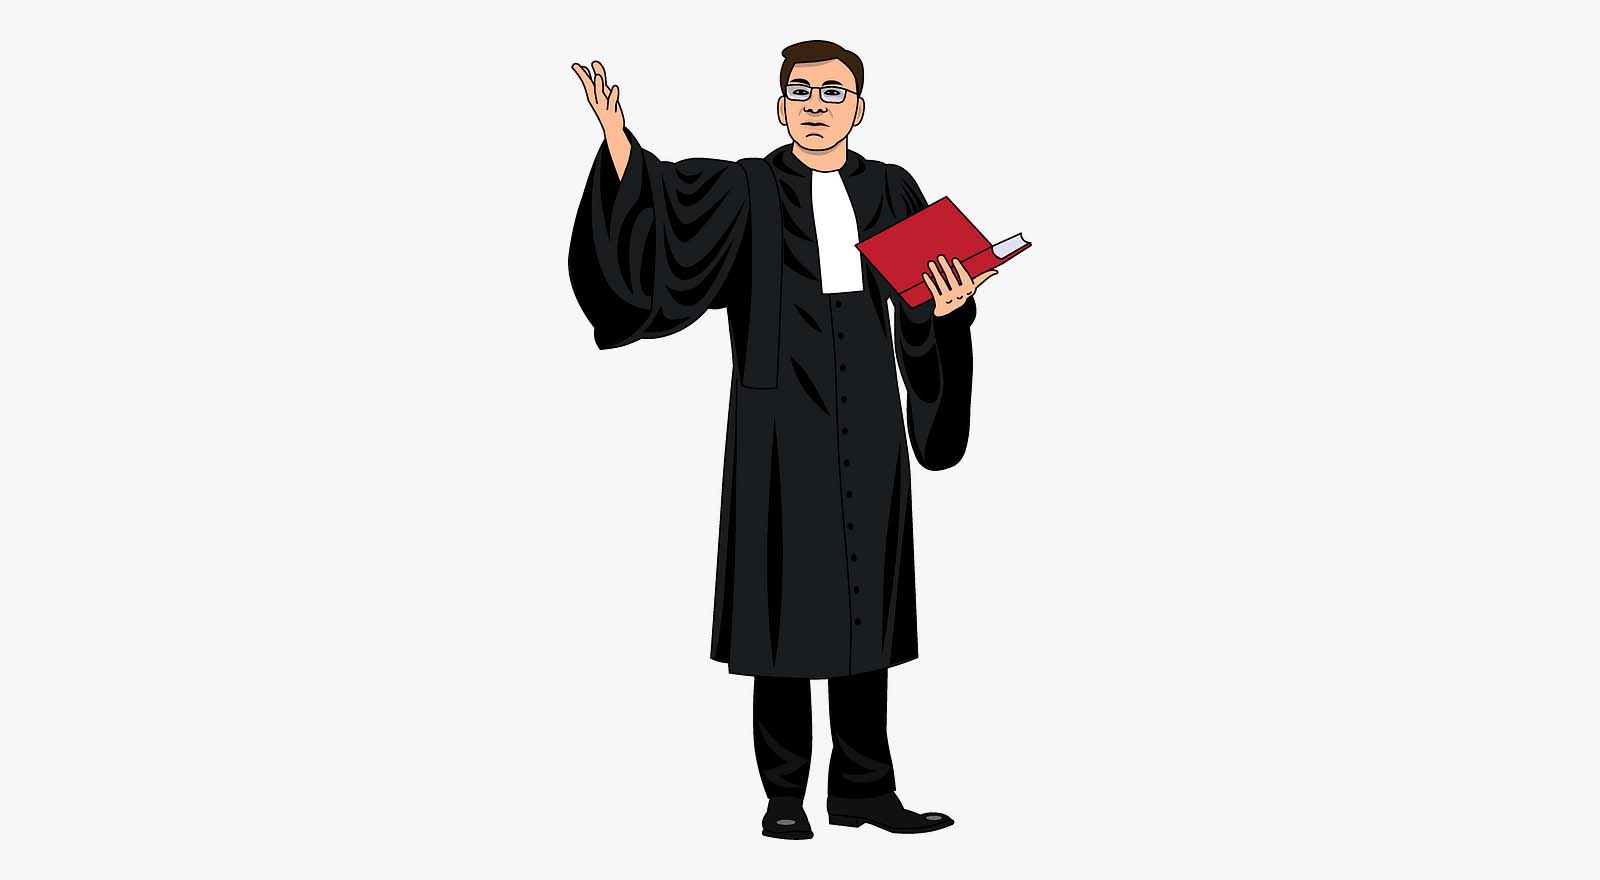 न्यायिक व्यवस्था में वकीलों की भूमिका